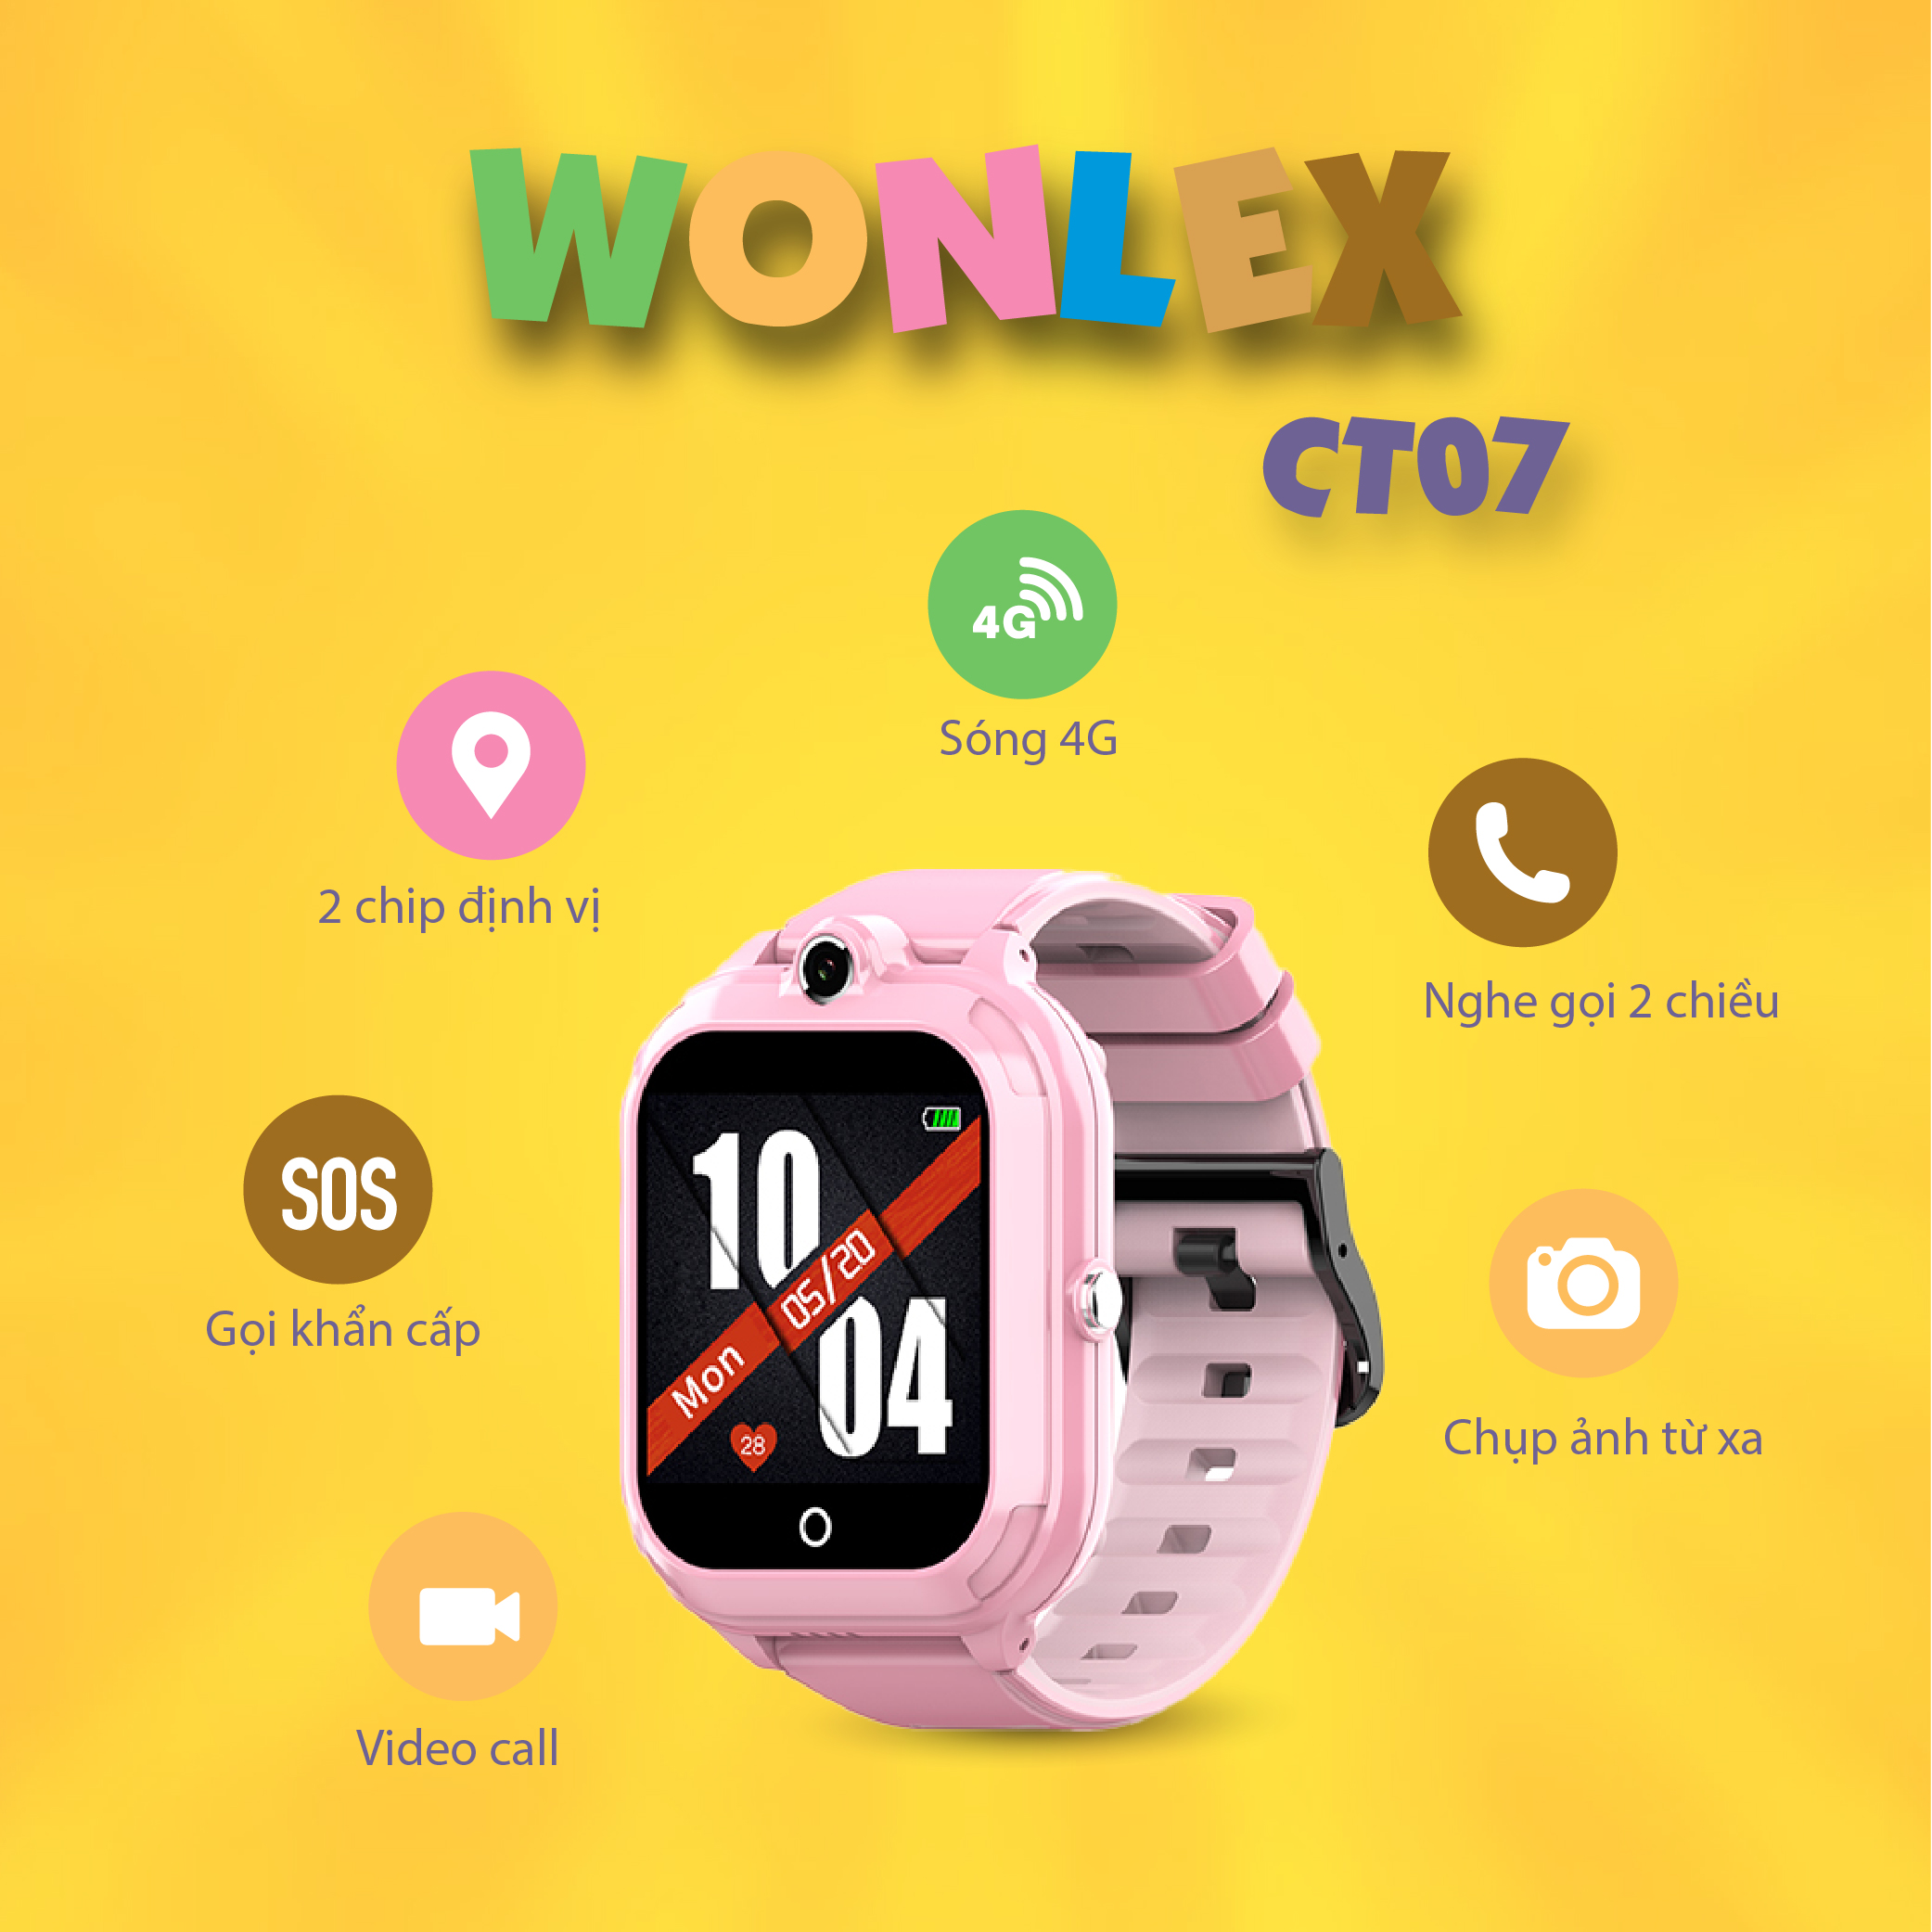 Đồng hồ định vị Wonlex CT07 chính hãng bảo hành 12 tháng | Lazada.vn